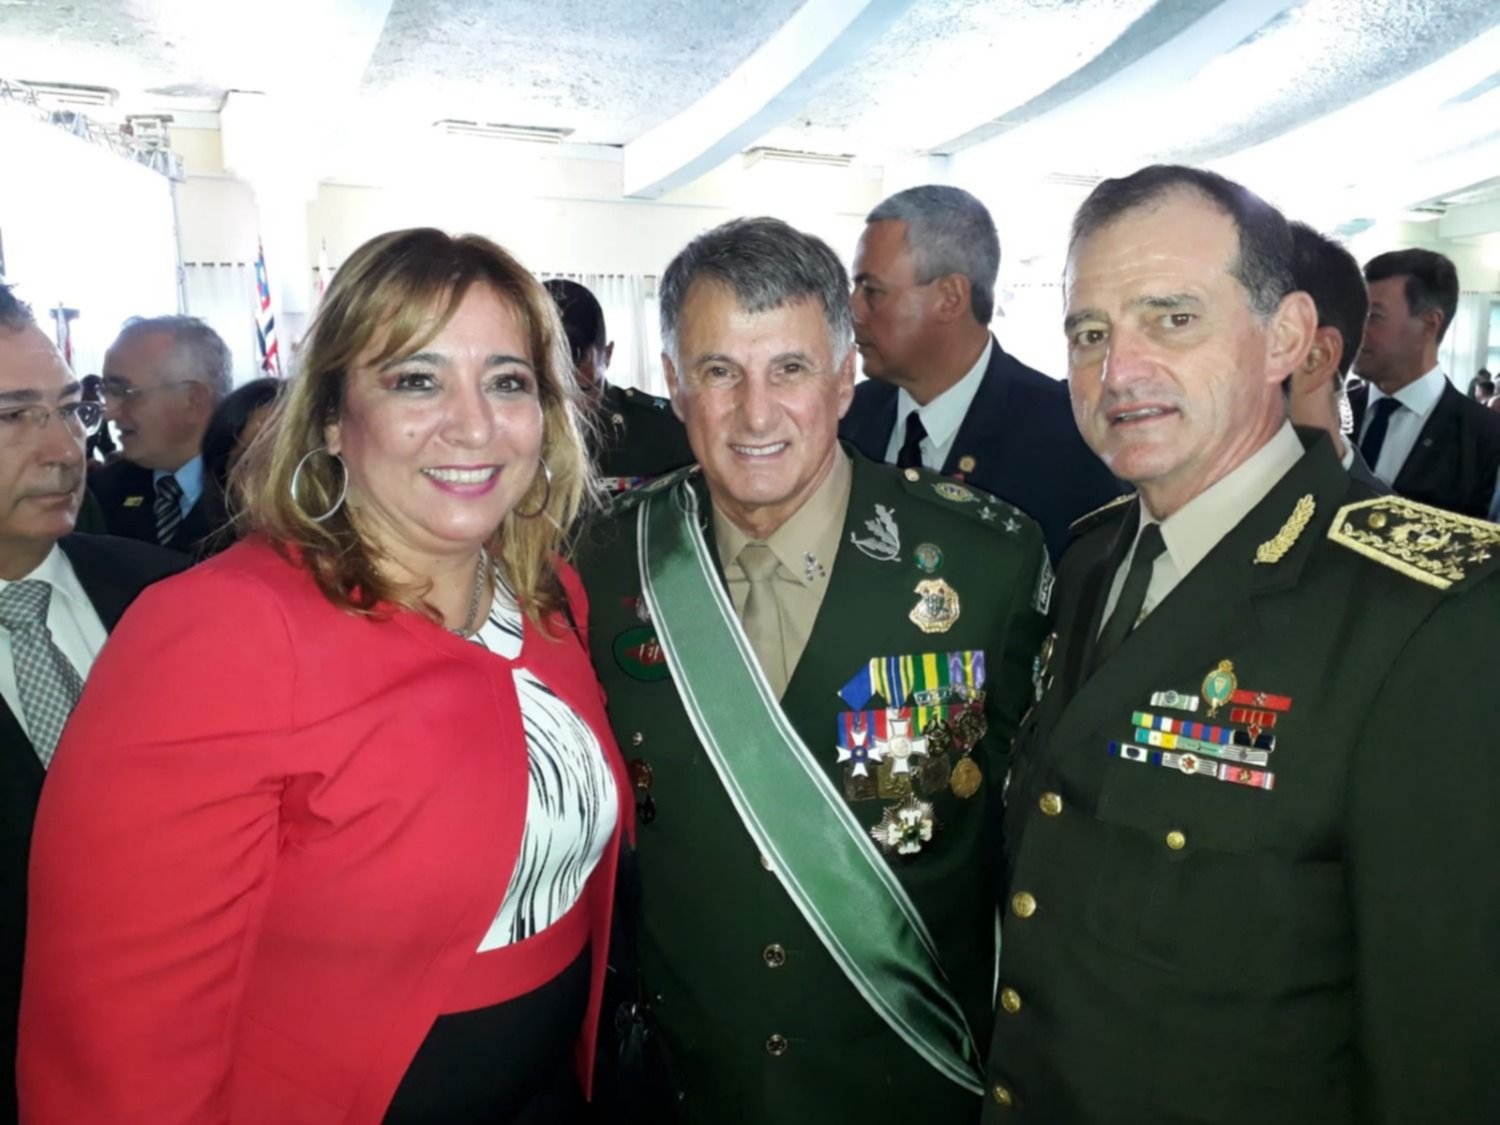 De izquierda a derecha: Irene Moreira, edila nacionalista y esposa de Manini Ríos; Edson Leal Pujol, nuevo comandante del Ejército brasileño; Guido Manini Ríos, comandante del Ejército uruguayo.